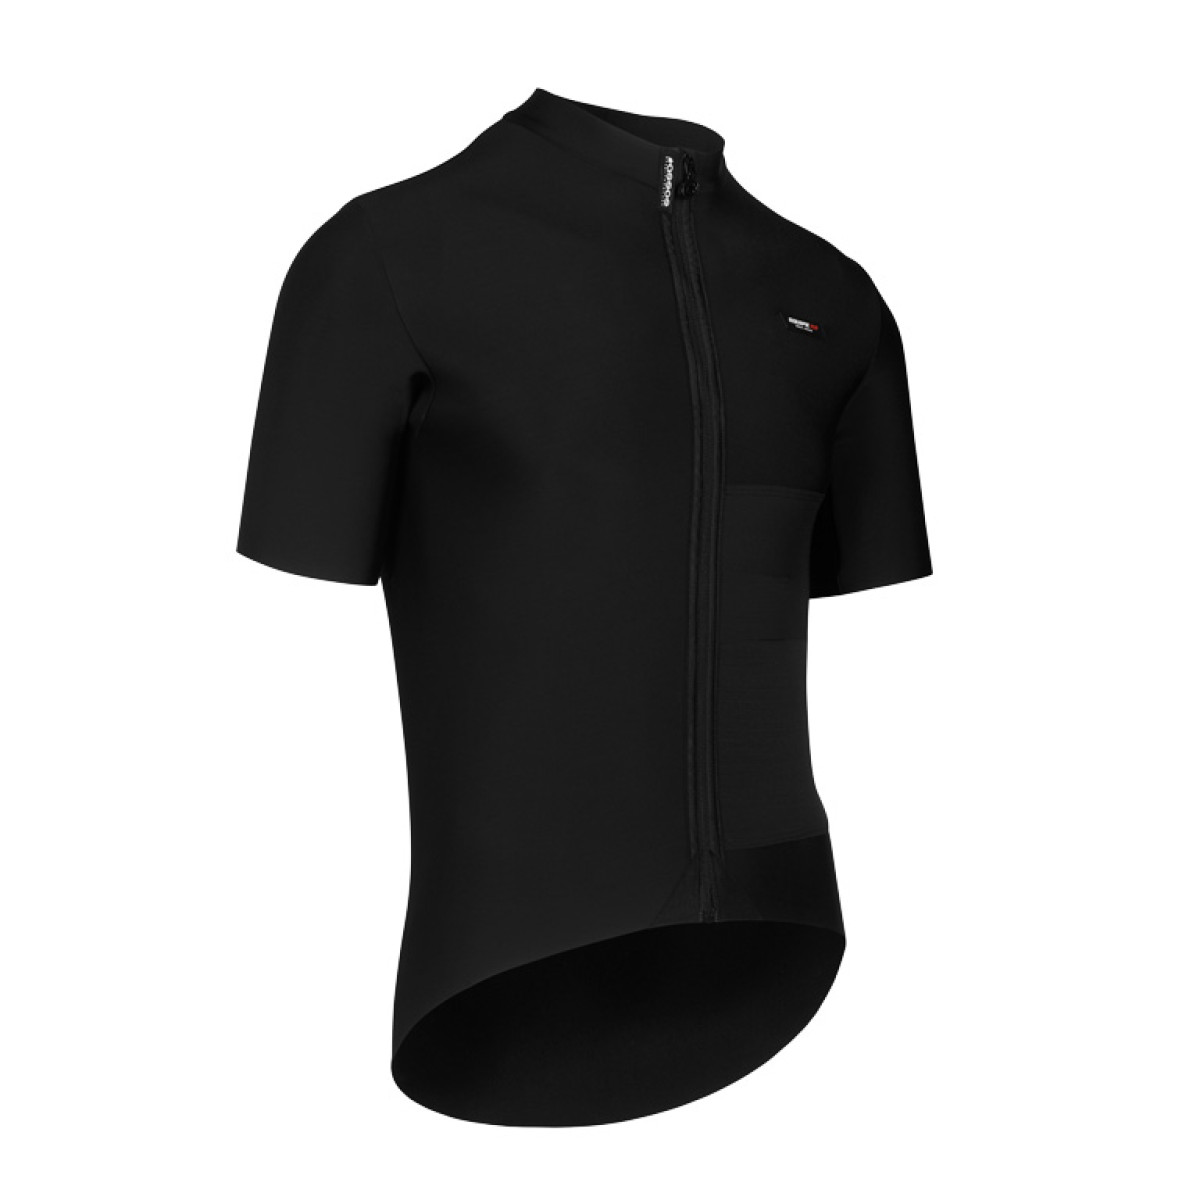 Assos Equipe RS Winter Mid Layer vyriški marškinėliai / Black Series